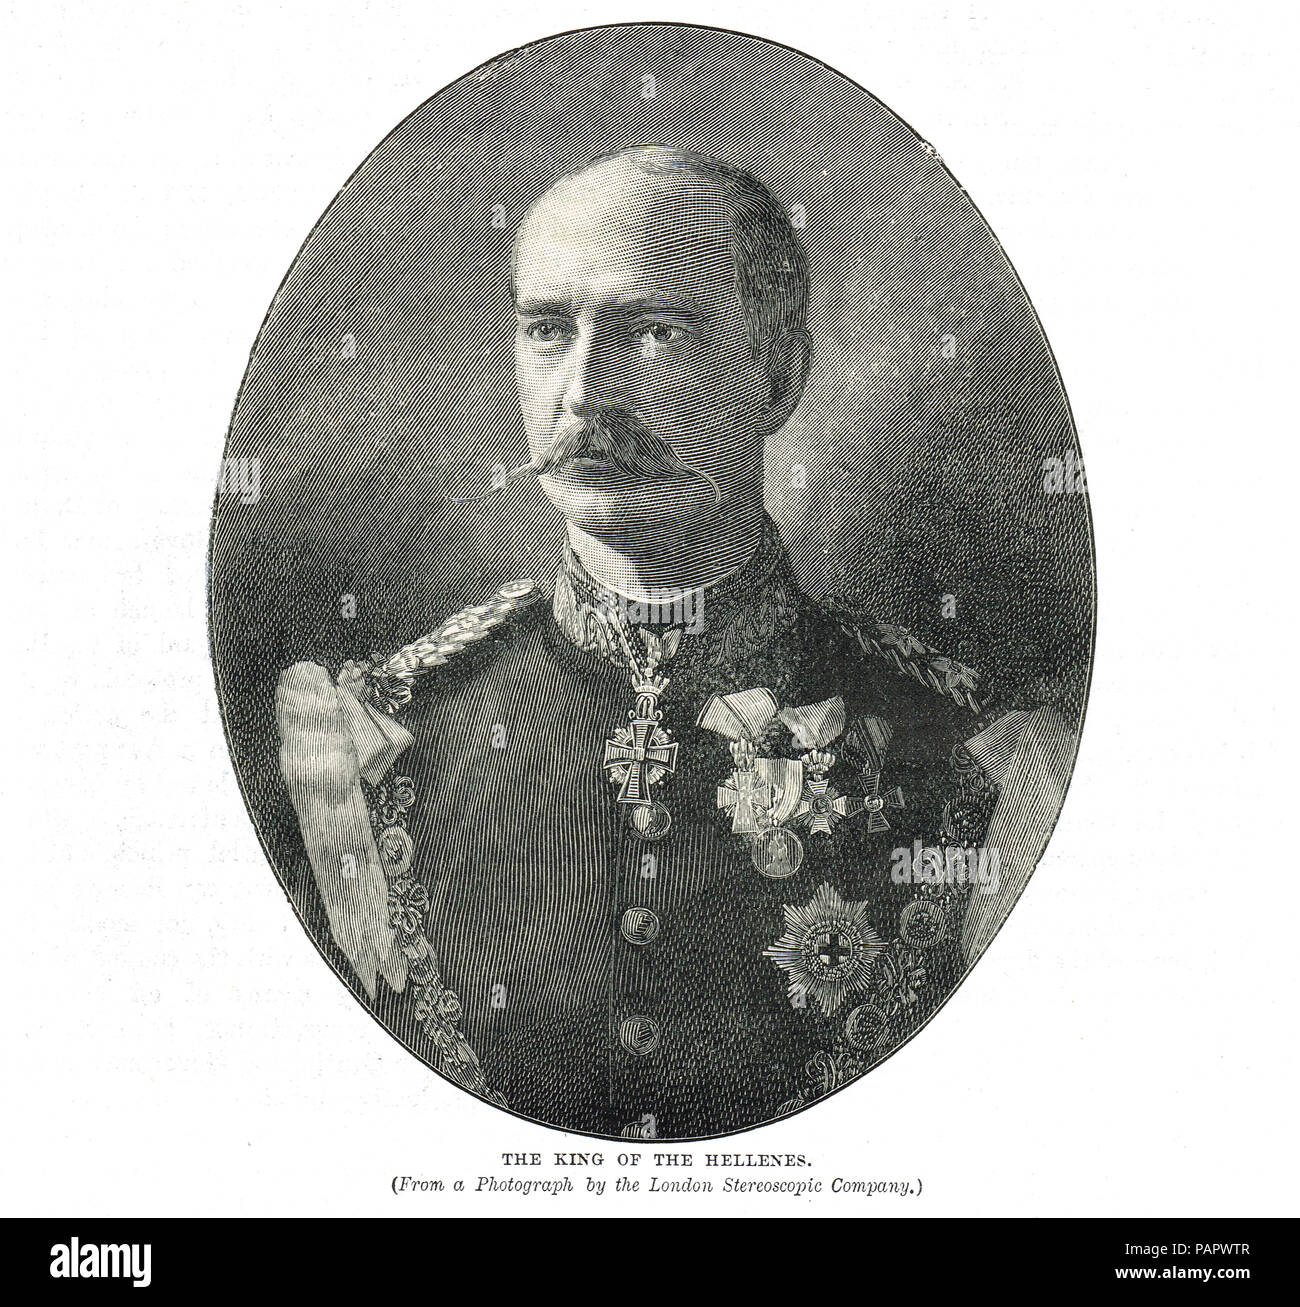 Giorgio I di Grecia, re degli Elleni, nato il principe William di Schleswig-Holstein-Sonderburg-Glücksburg, re di Grecia dal 1863 fino al suo assassinio nel 1913 Foto Stock